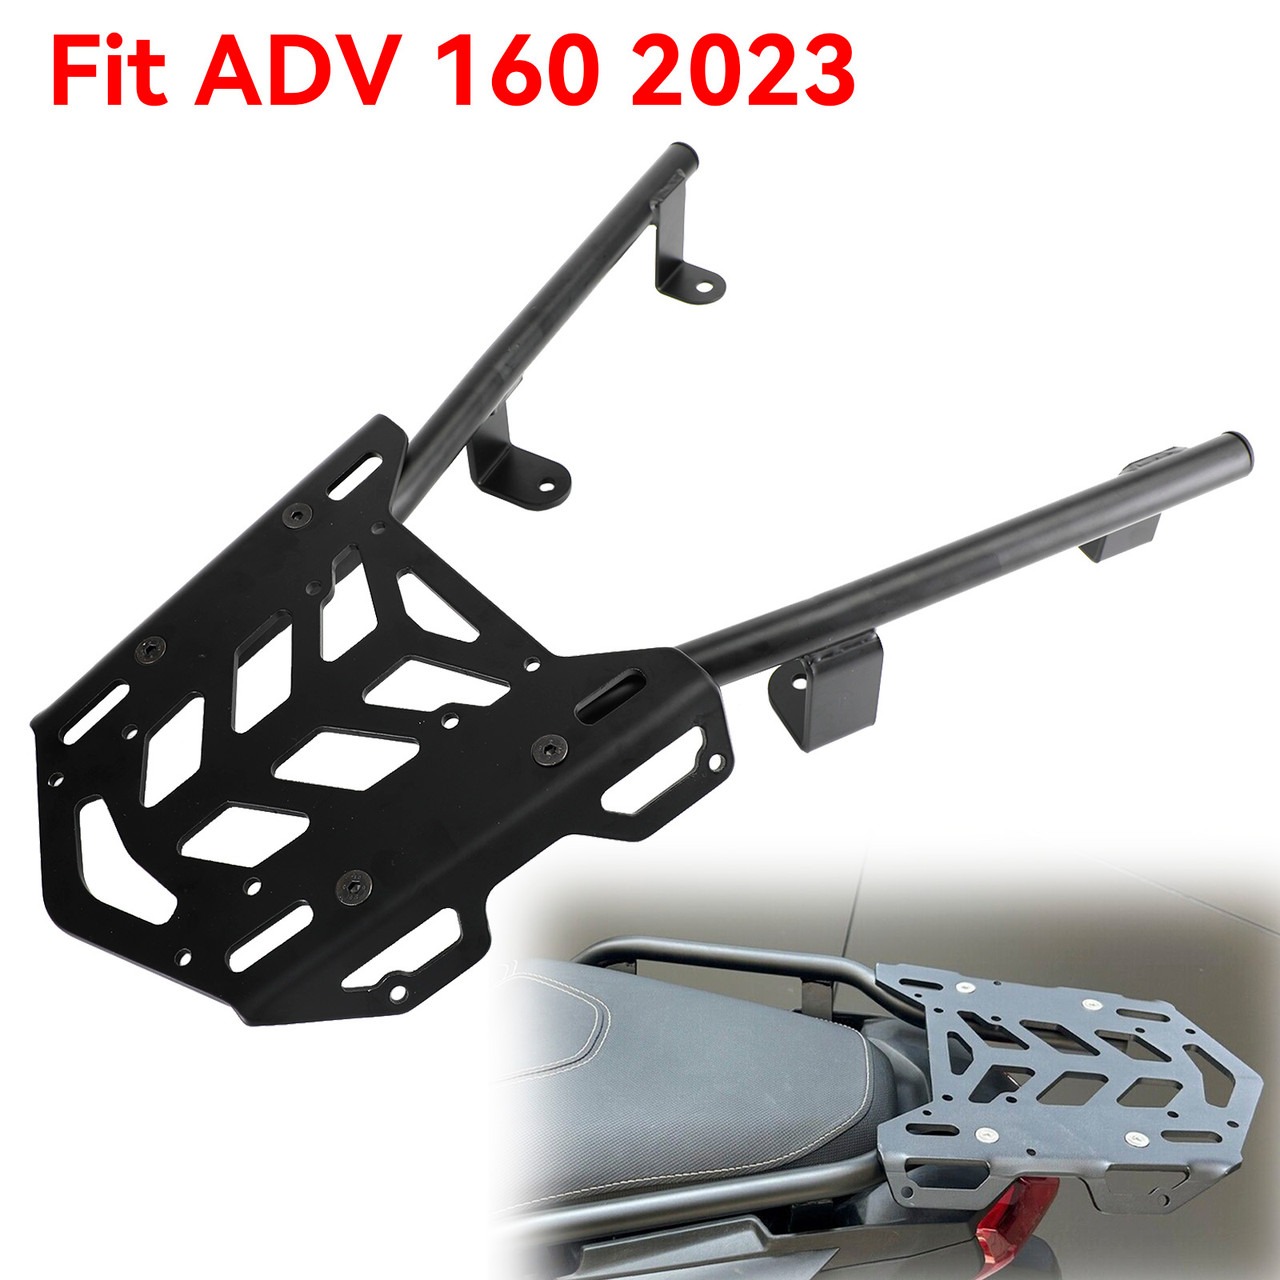 Tube Rear Rack Cargo Holder - Black For Honda ADV 160 ADV160 ADV-160 2023-2024